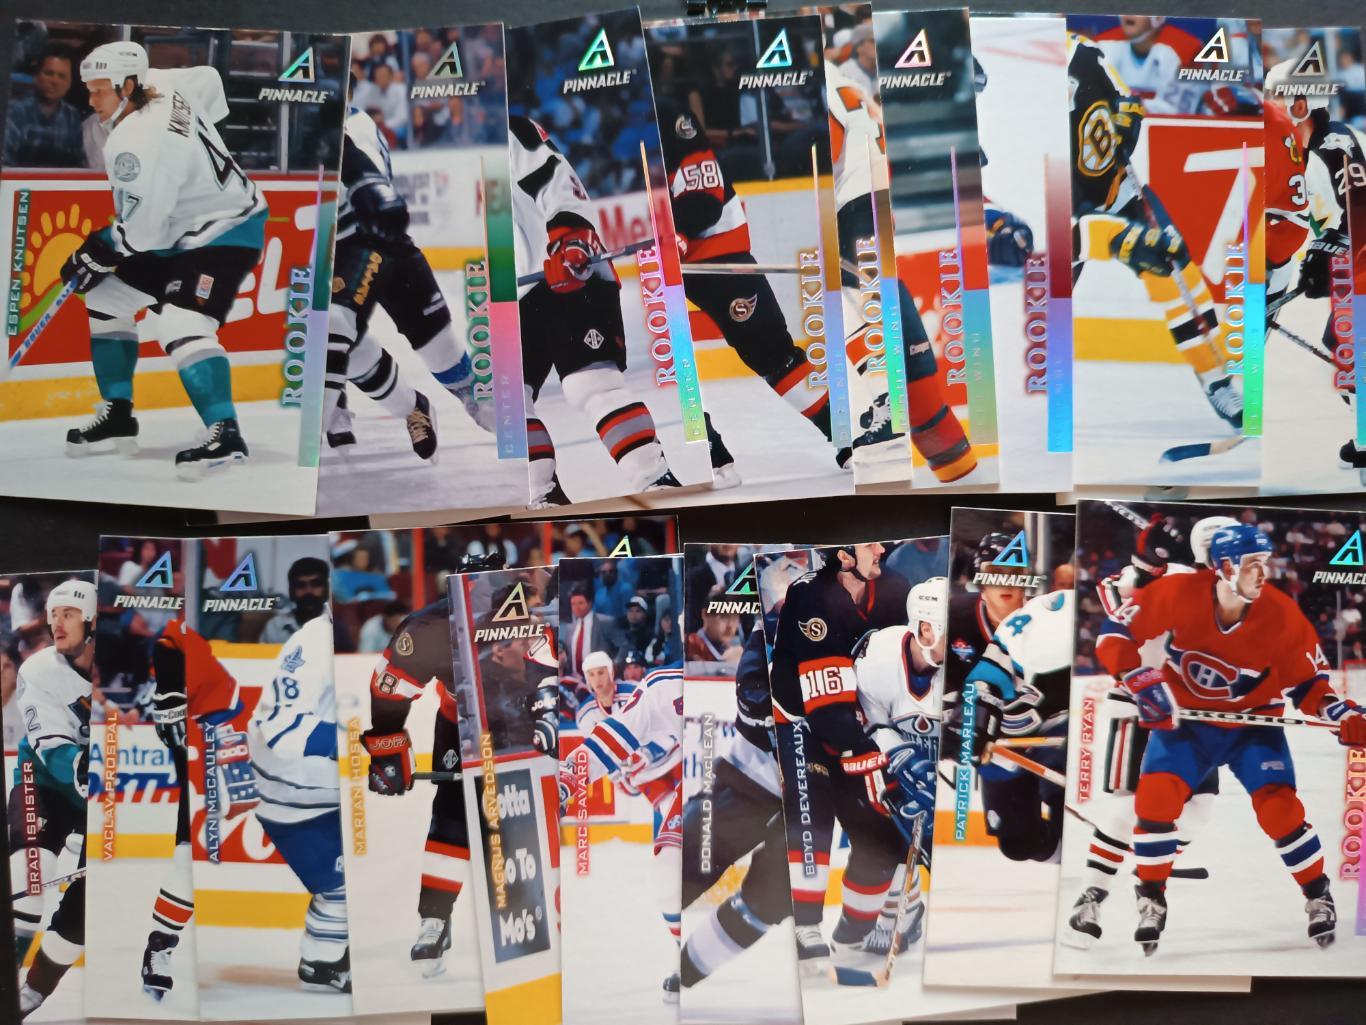 ХОККЕЙ НАБОР КАРТОЧЕК НХЛ ПИННЕКЛ 1997-98 NHL PINNACLE CARD FULL SET #1-200